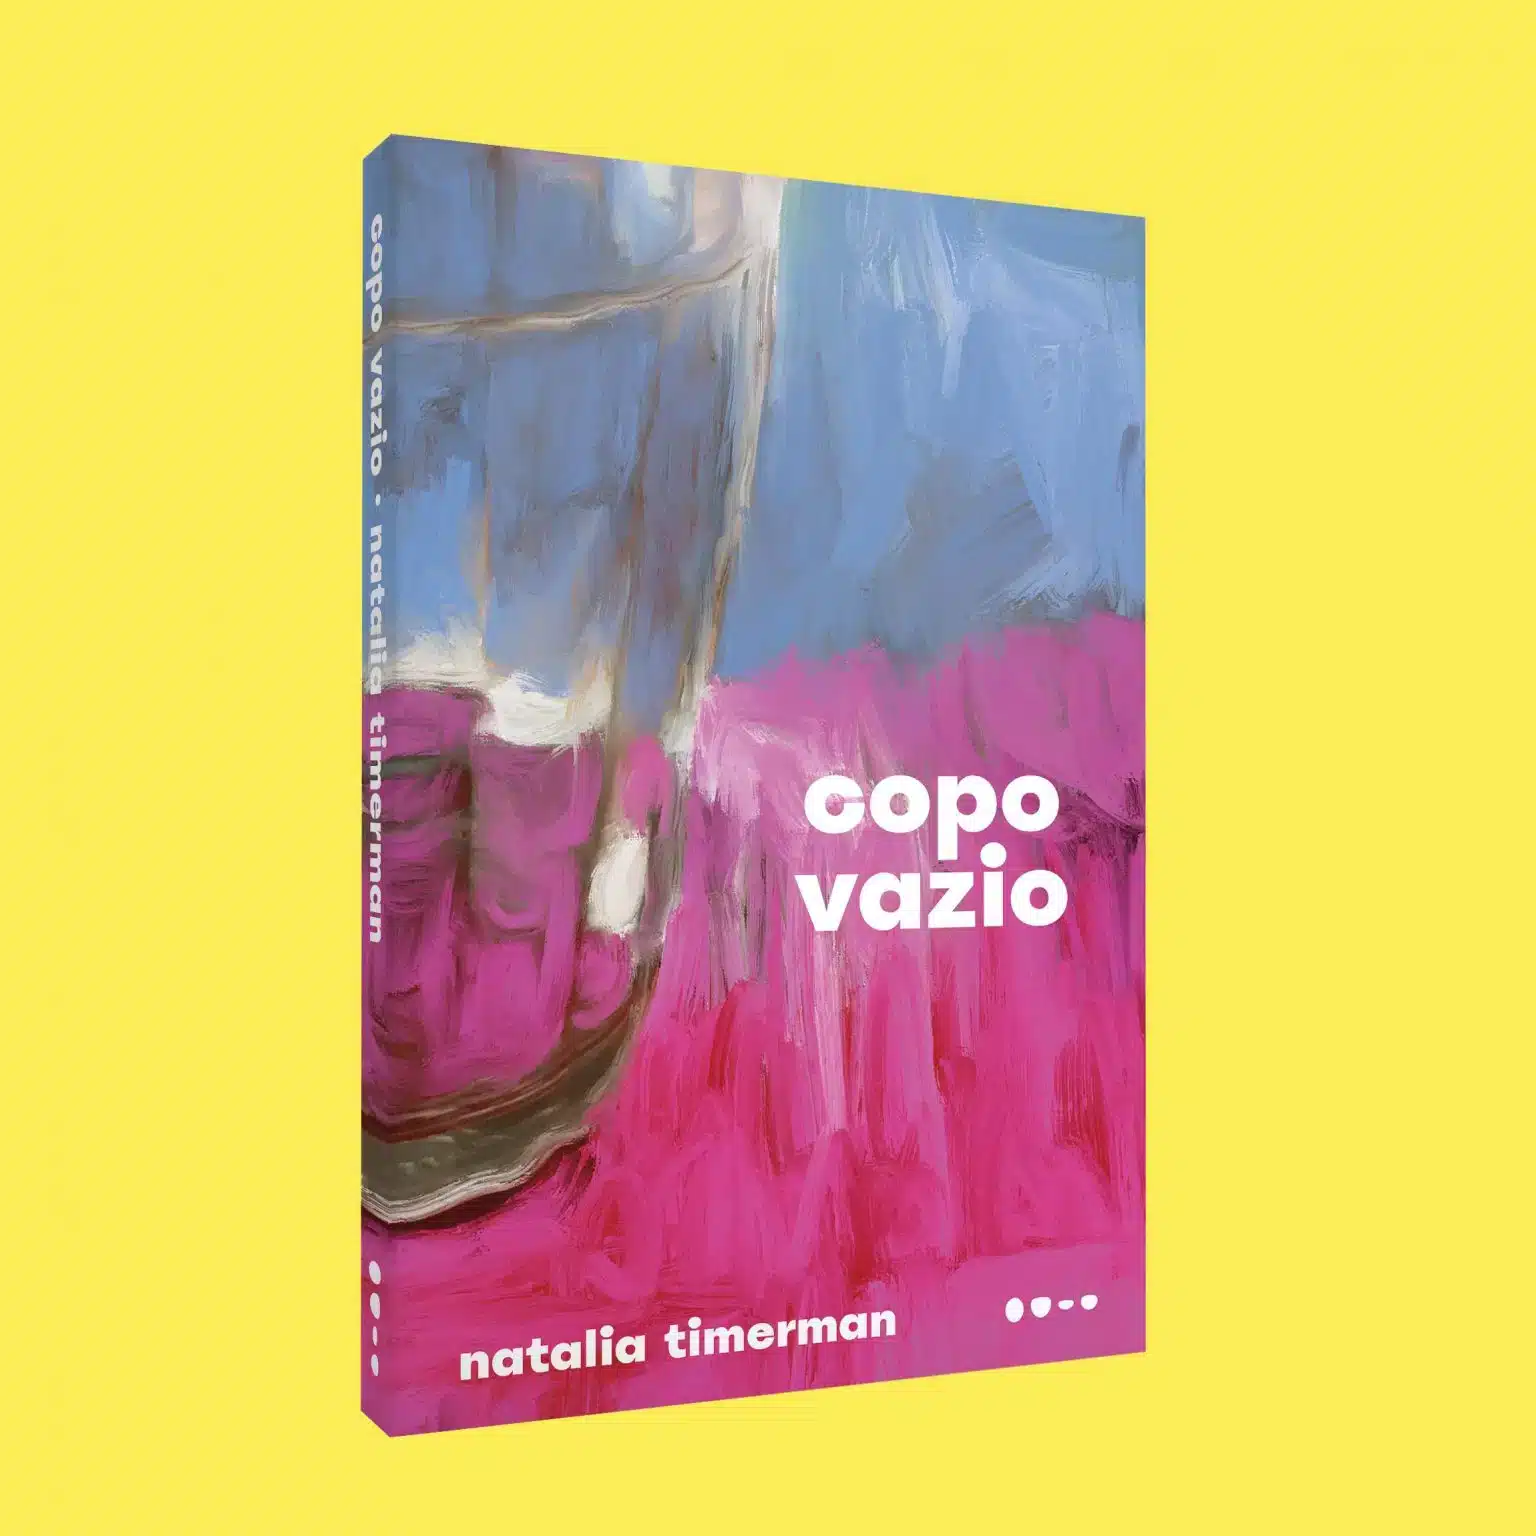 revistapazes.com - 3  livros que falam do amor, do abandono e da solidão nos tempos atuais